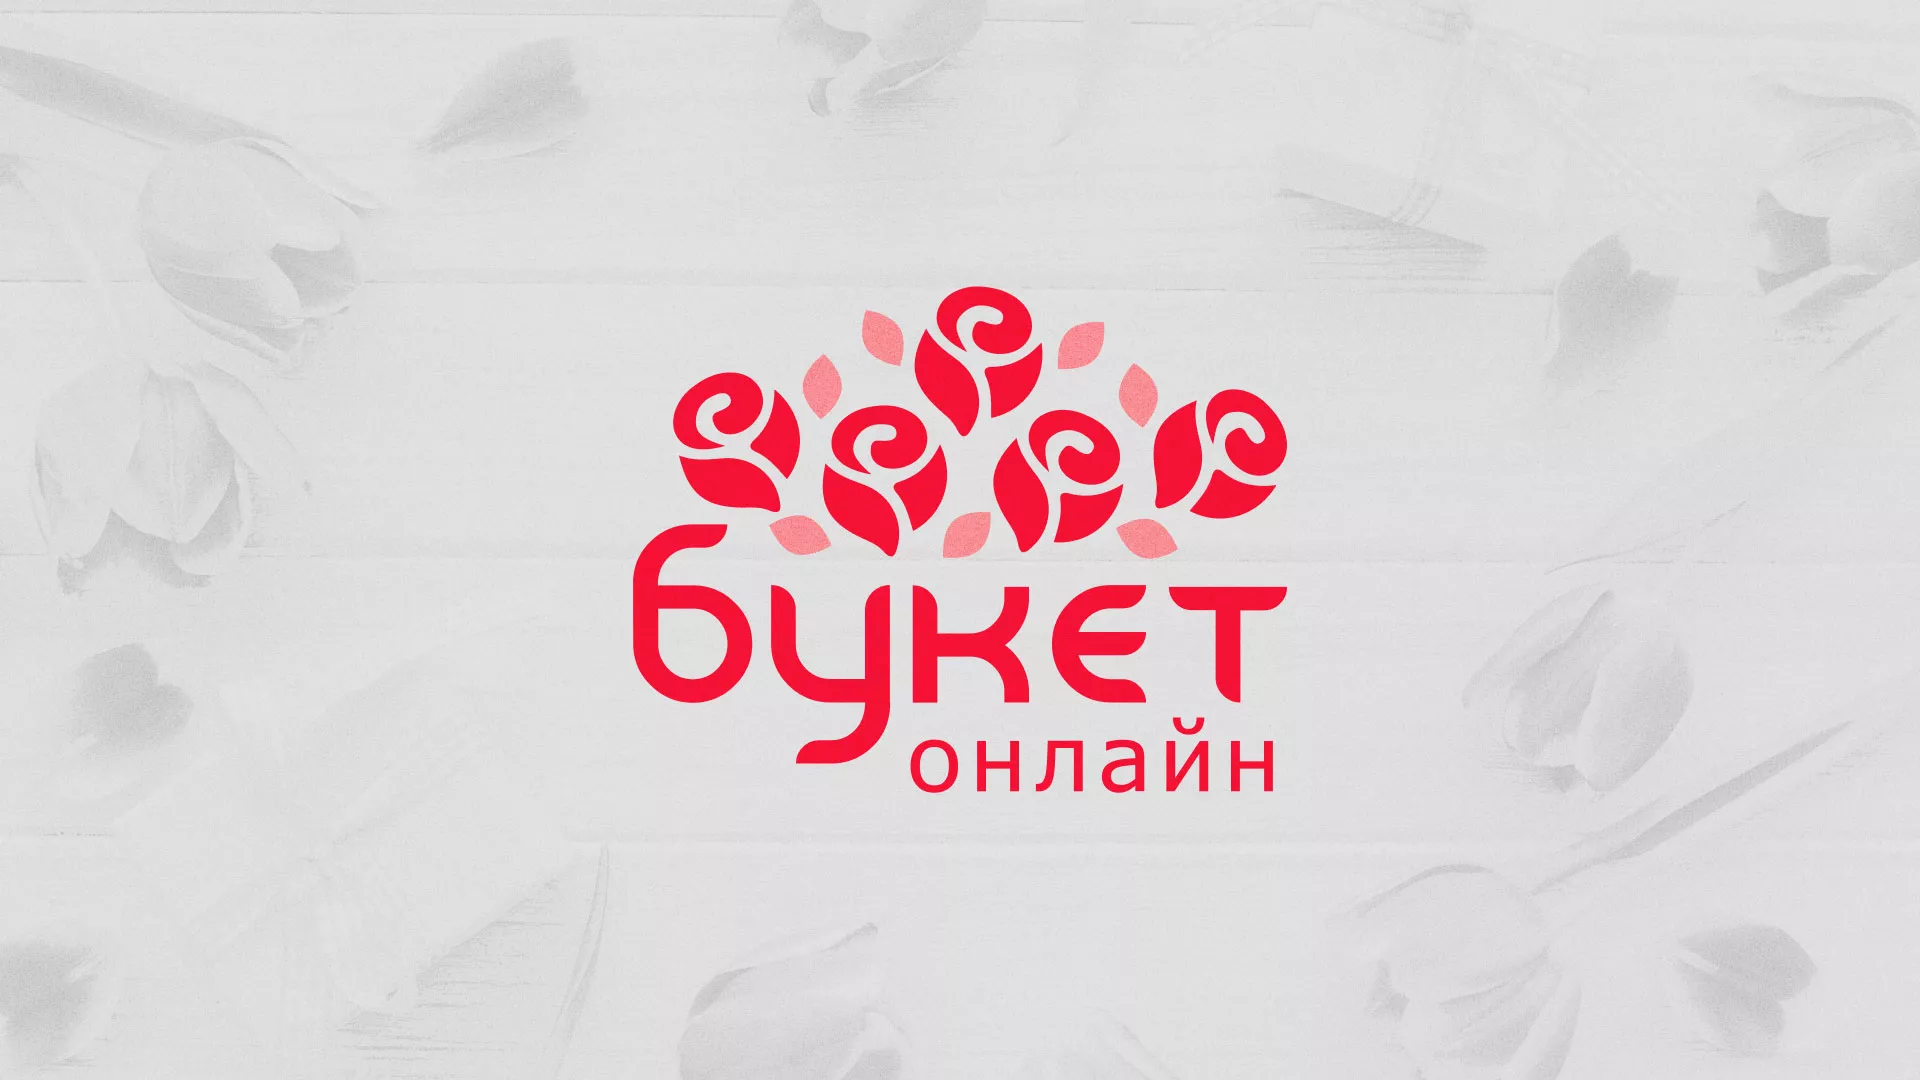 Создание интернет-магазина «Букет-онлайн» по цветам в Удомле